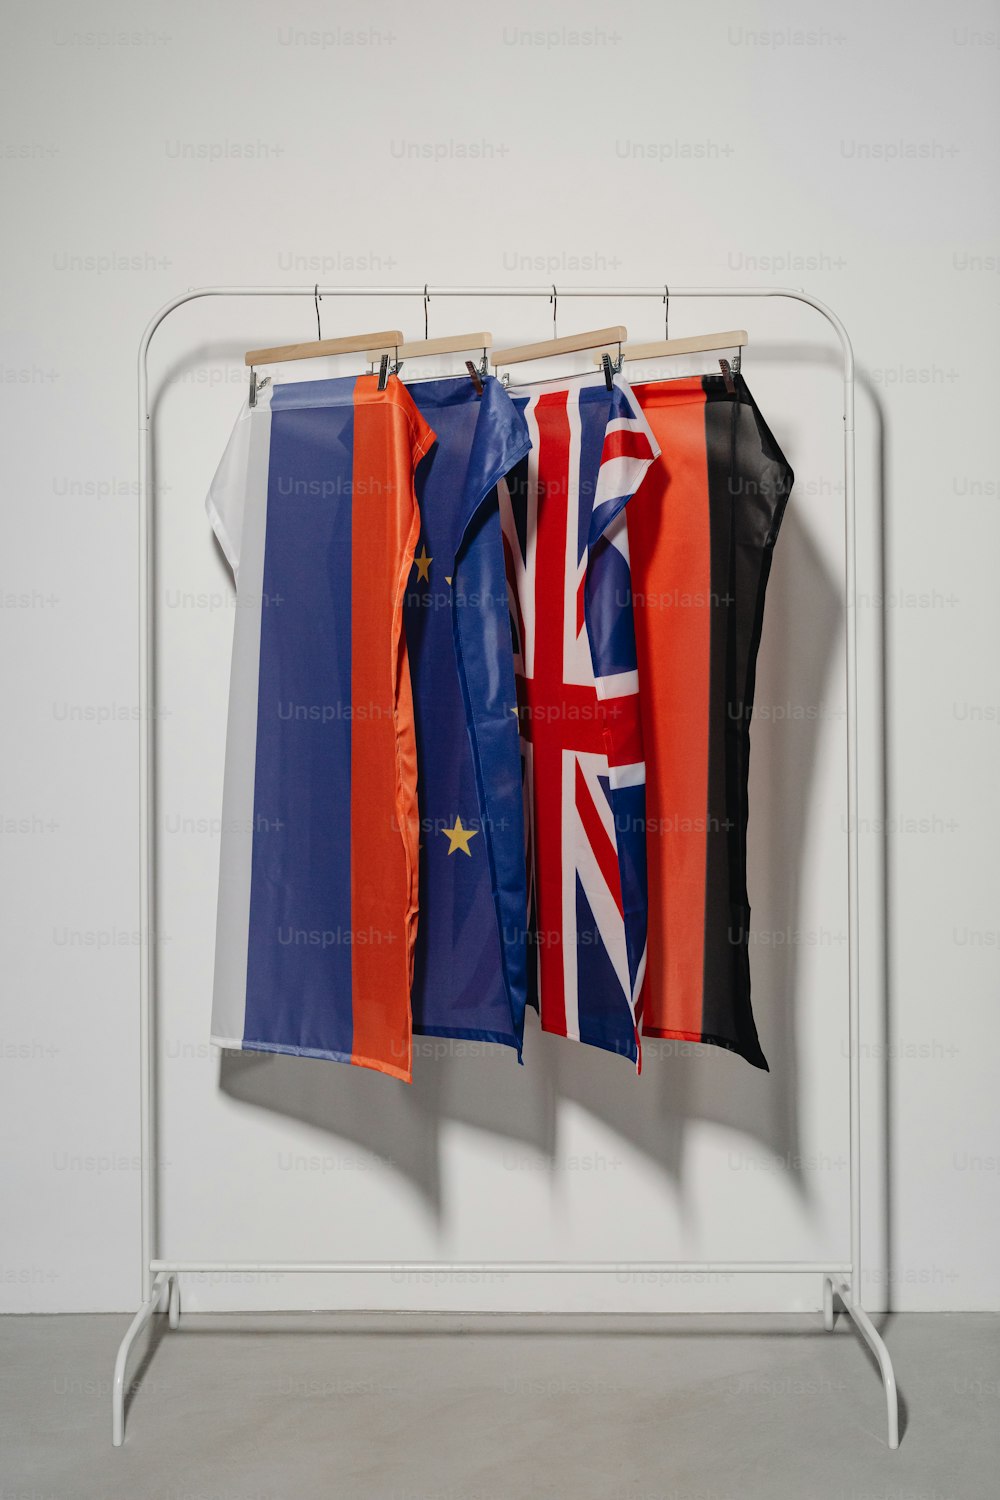 방의 옷걸이에 걸려 있는 세 개의 깃발